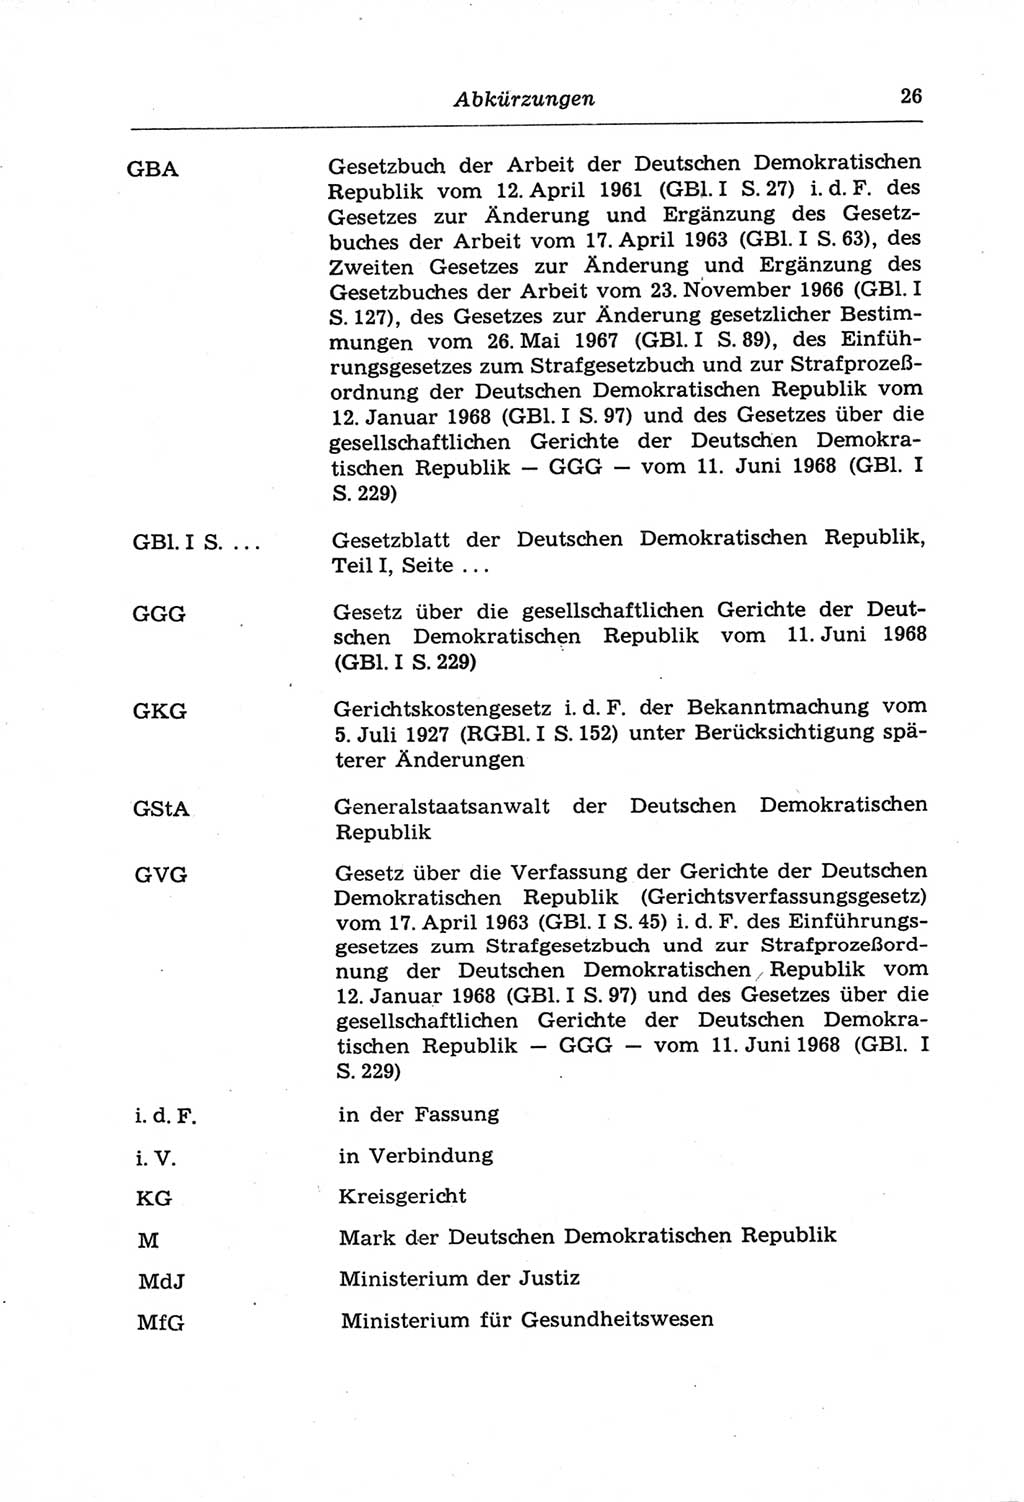 Strafprozeßordnung (StPO) der Deutschen Demokratischen Republik (DDR) und angrenzende Gesetze und Bestimmungen 1968, Seite 26 (StPO Ges. Bstgn. DDR 1968, S. 26)